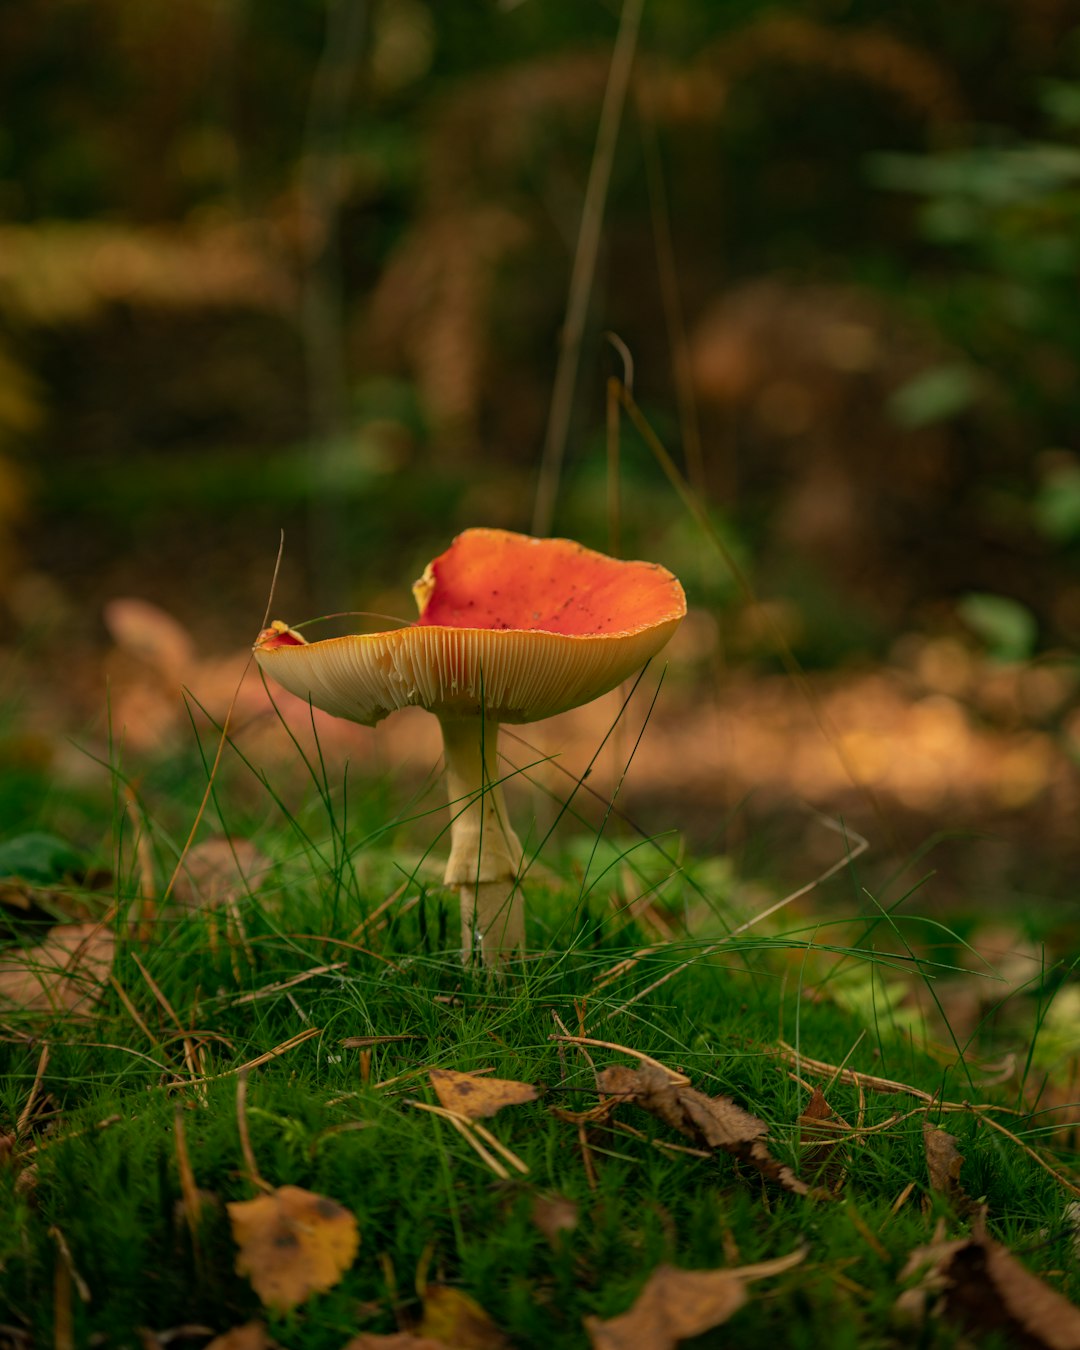 red and white mushroom in tilt shift lens